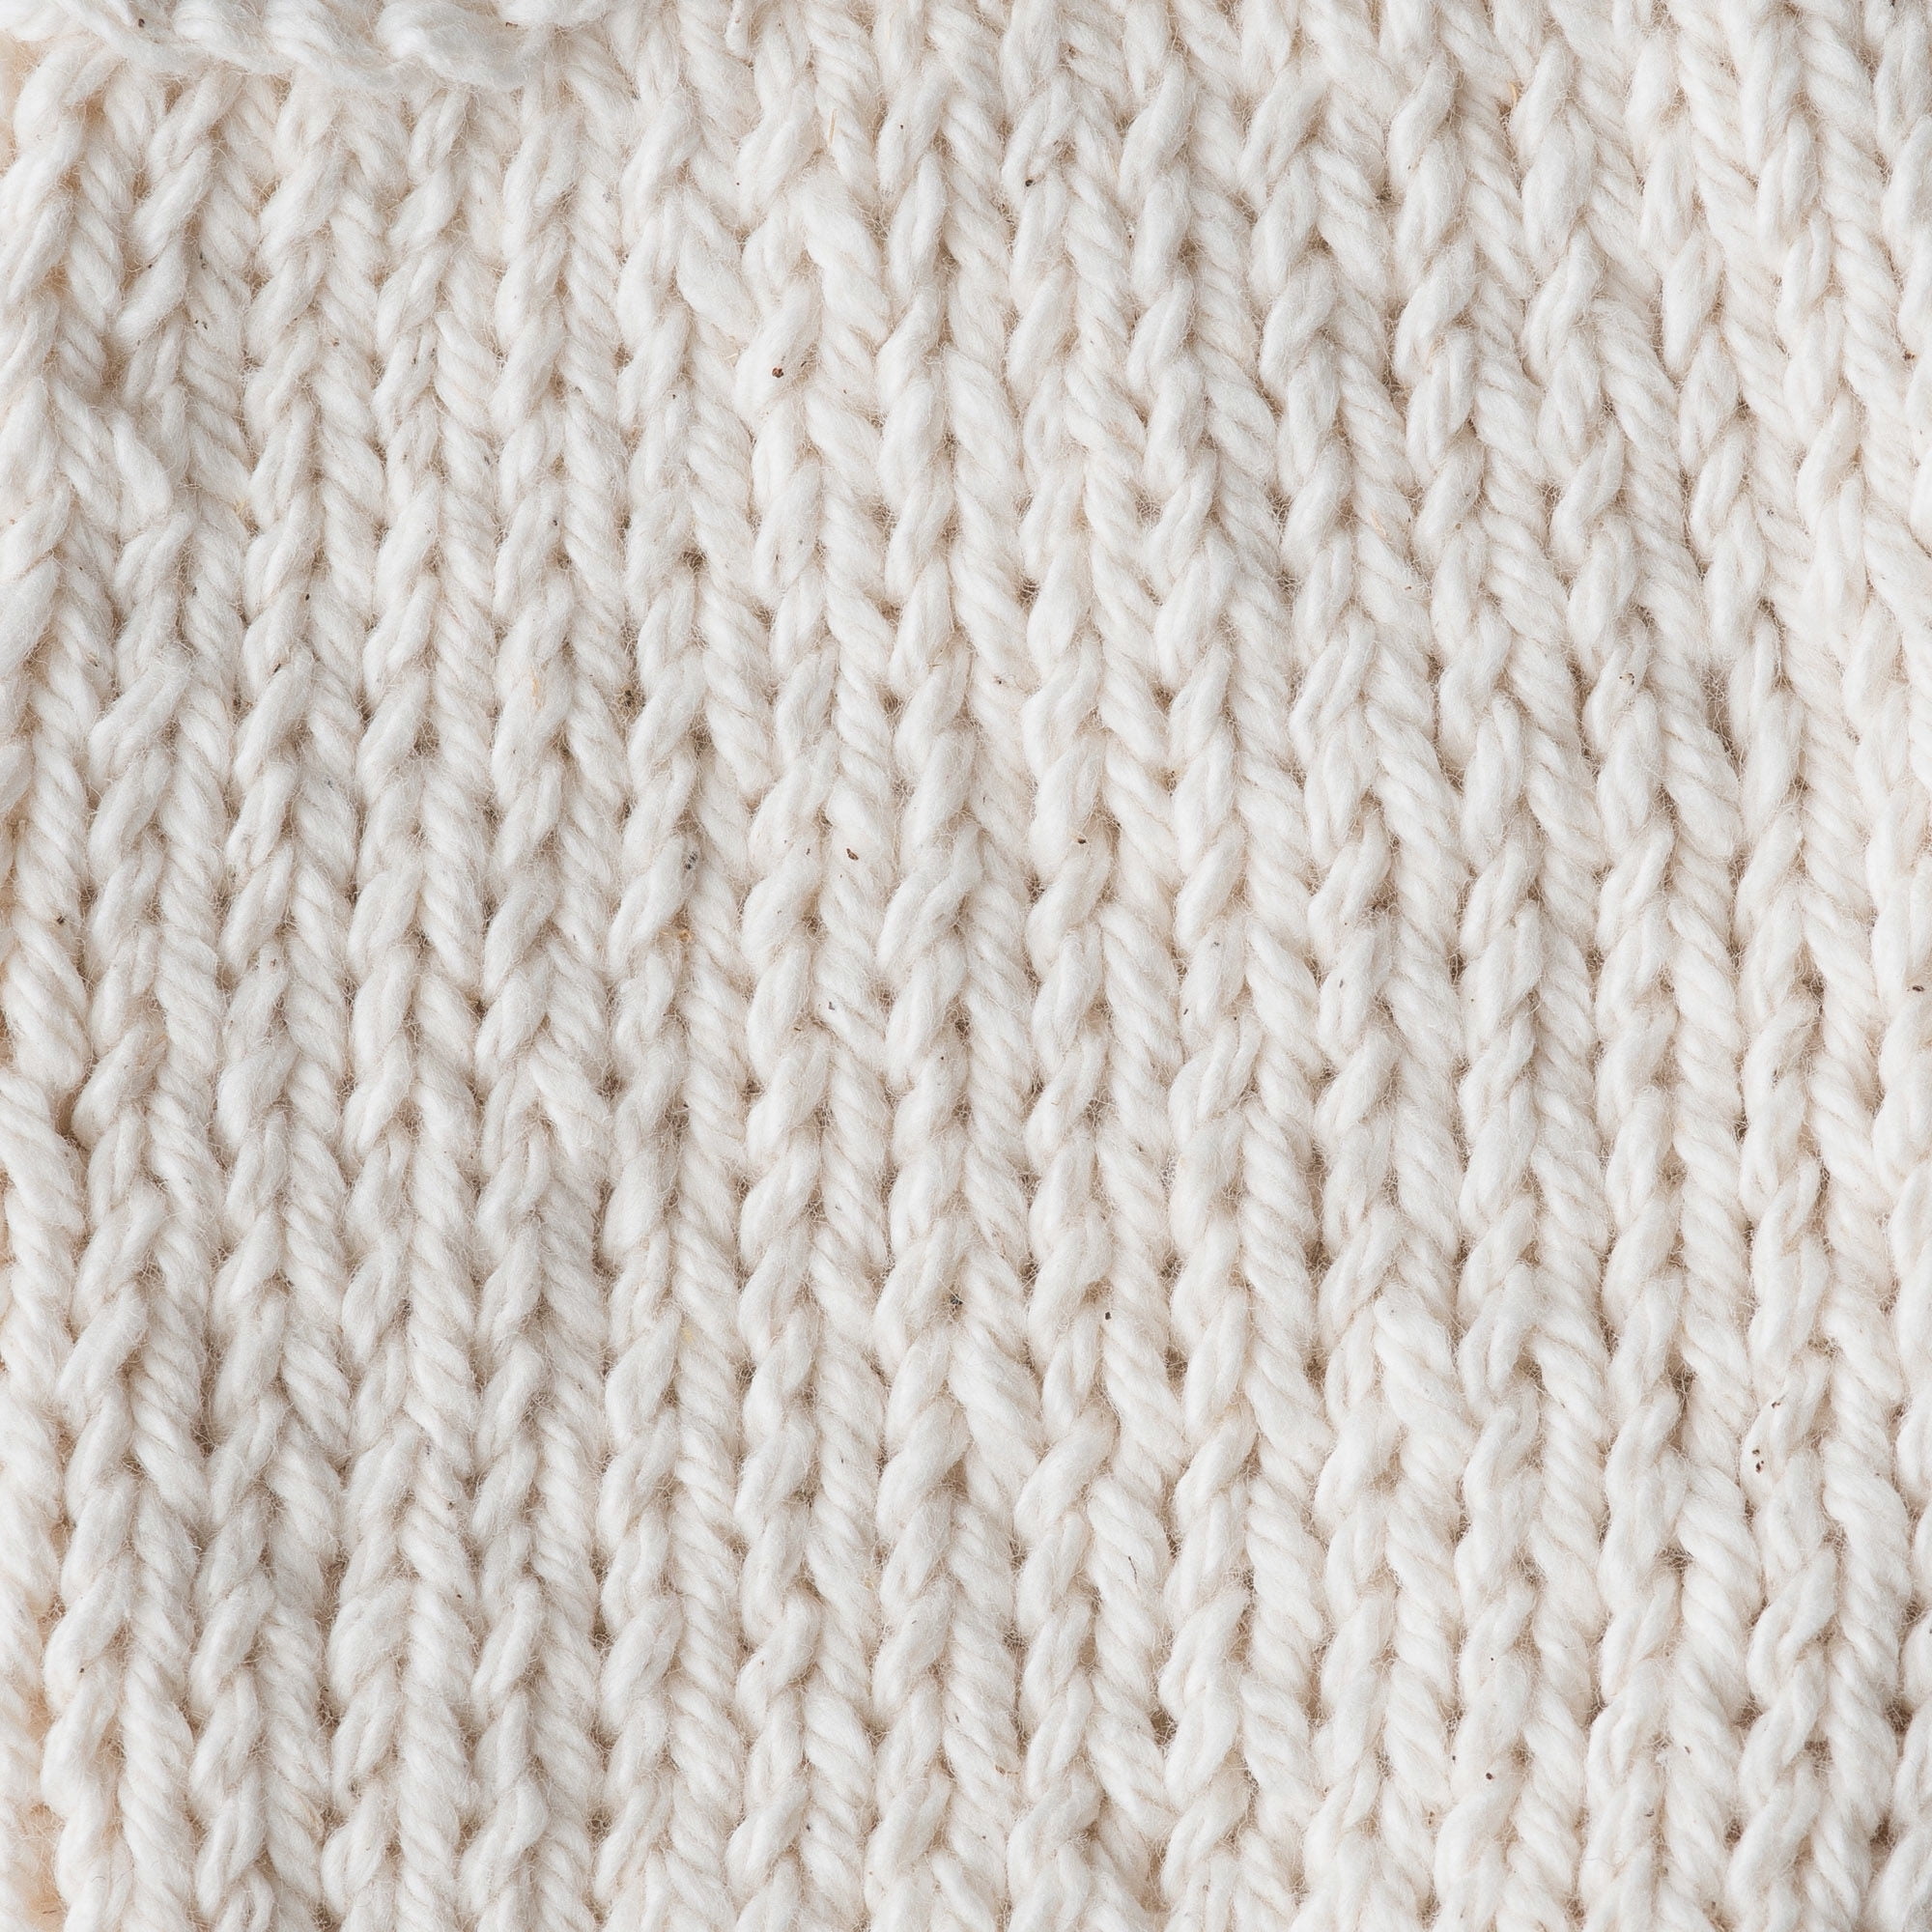 Lily Sugar N Cream Super Size Cotton Yarn( 4 - Medium,85g ) - CLEARANCE by  www.